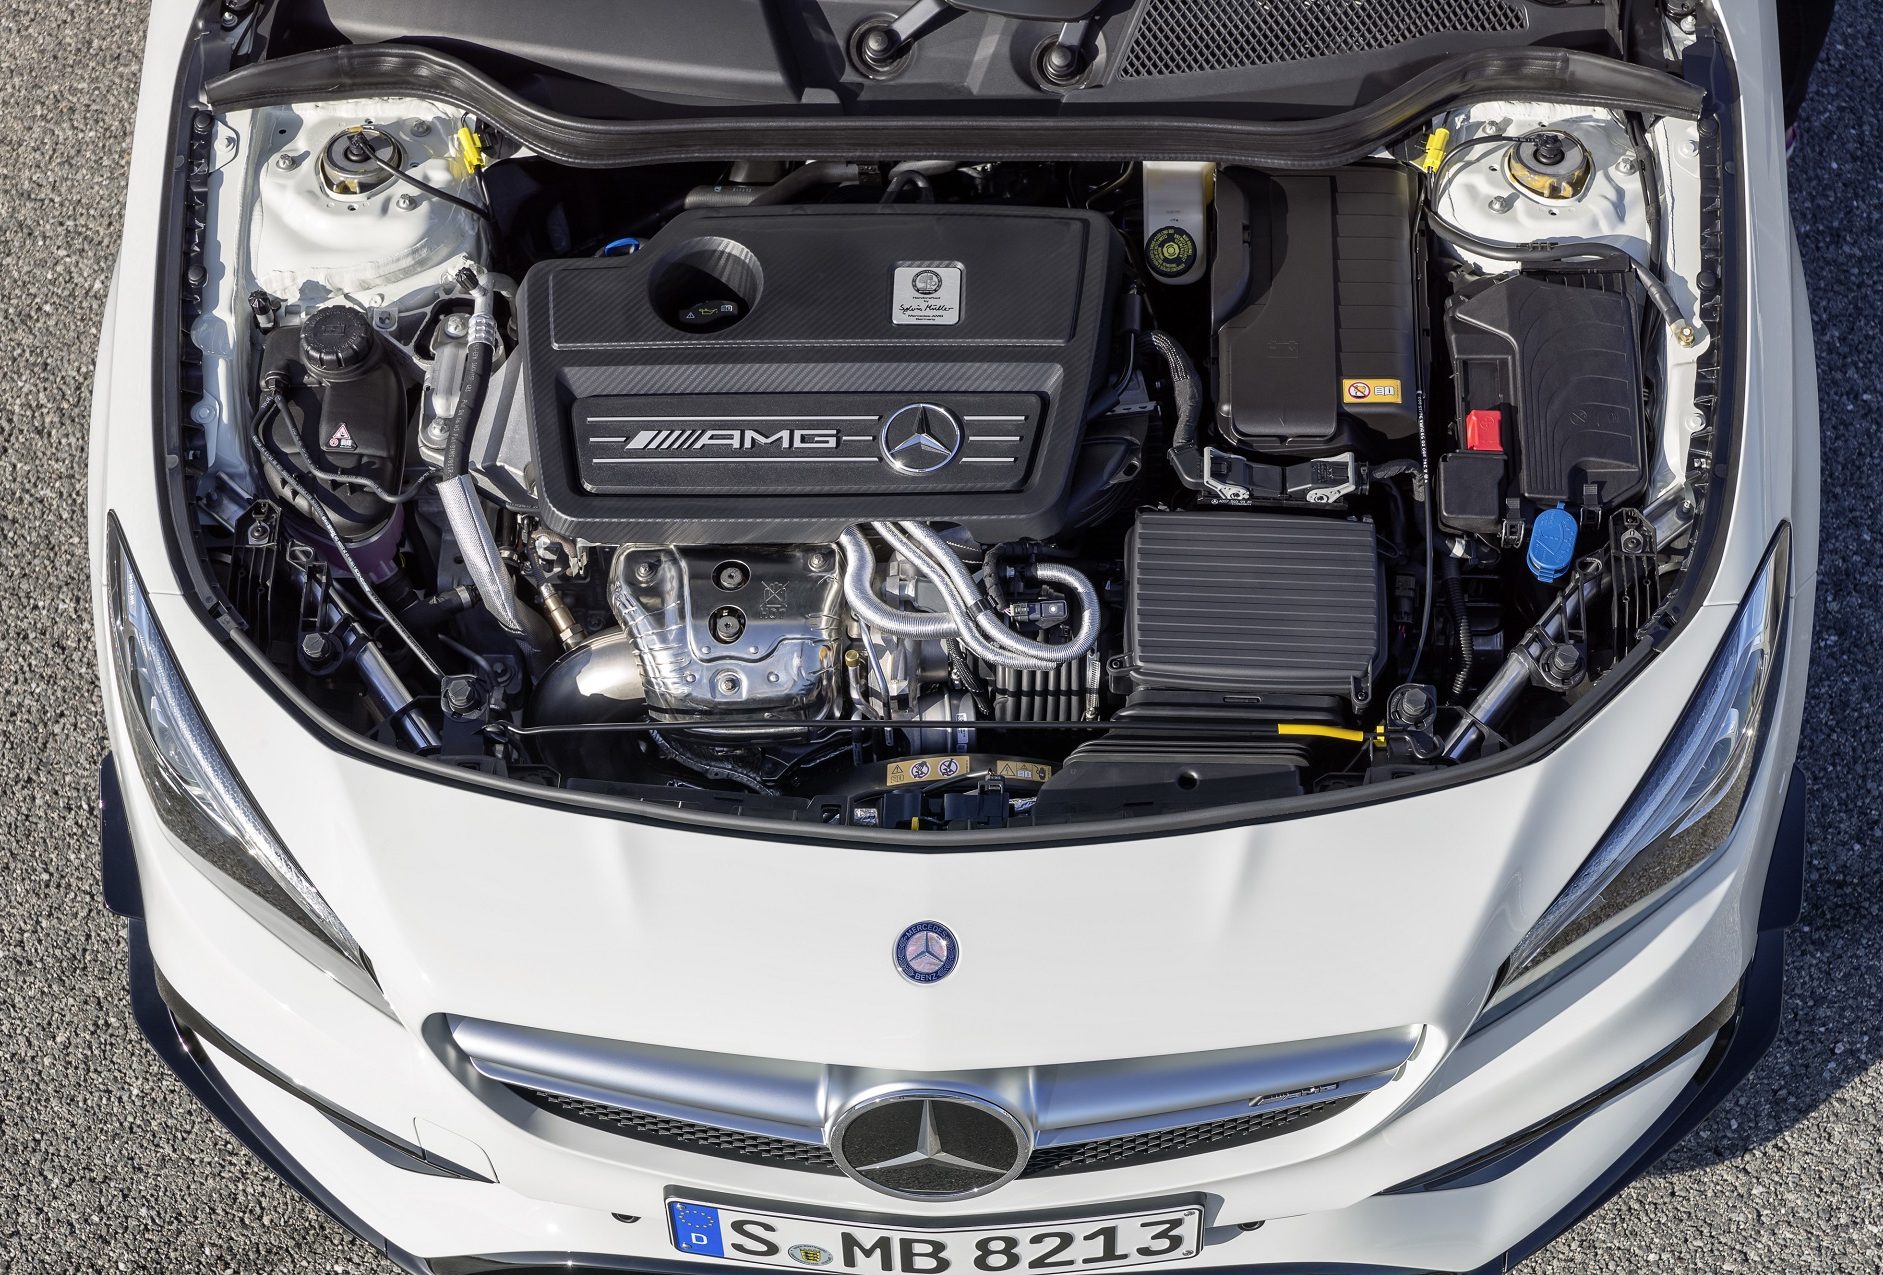 Mercedes-AMG CLA 45  Coupé (C117) 2016. Exterieur: diamantweiß, AMG Aerodynamic-Paket; Interieur: schwarz, Performance Sitze; Kraftstoffverbrauch (l/100 km) innerorts/außerorts/kombiniert:  9,2/5,6/6,9, CO2-Emissionen kombiniert: 162 g/km